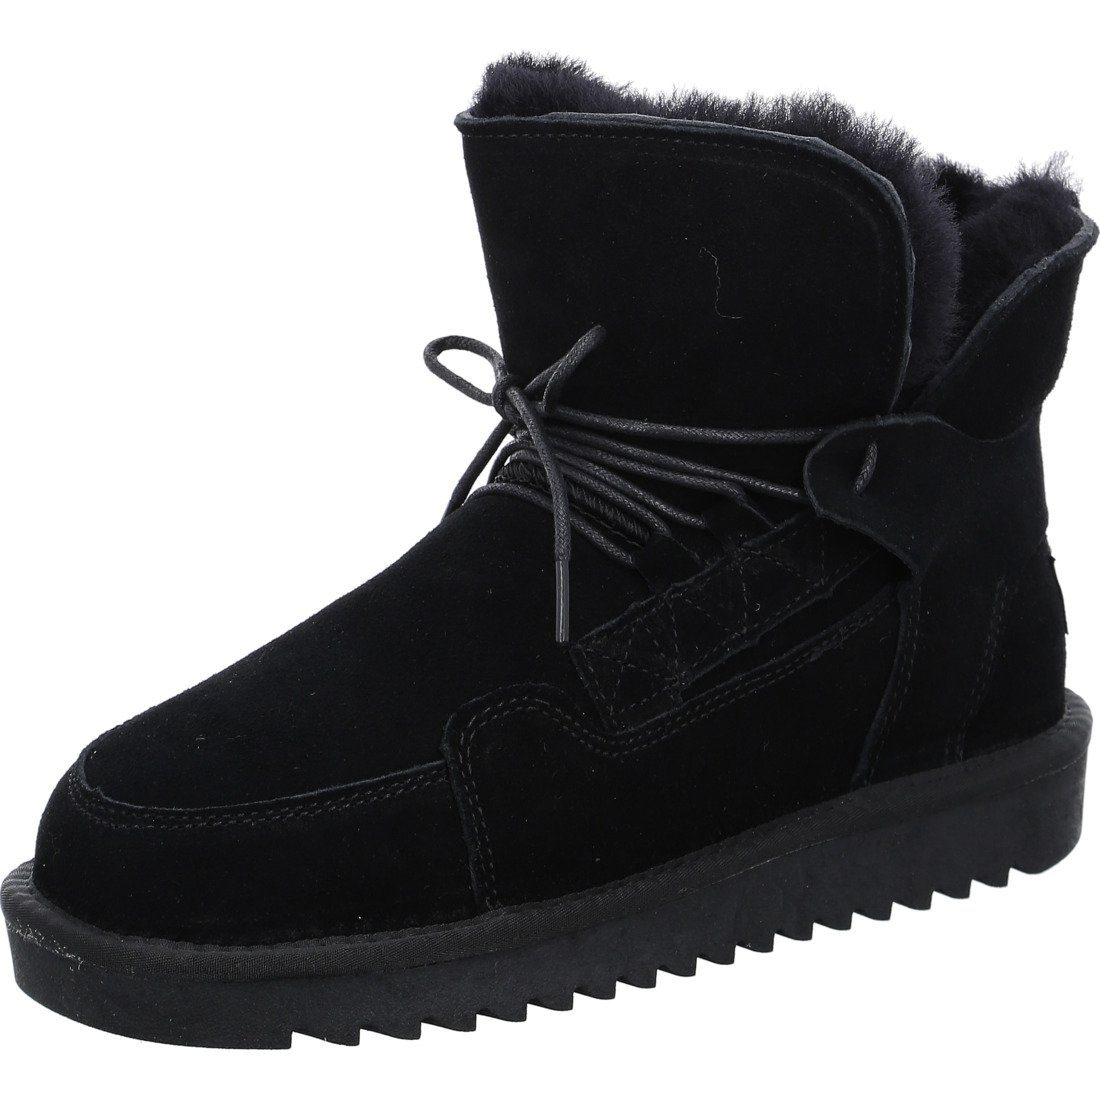 Ara Ara Schuhe, Stiefel Alaska - Leder Damen Stiefel schwarz 043841